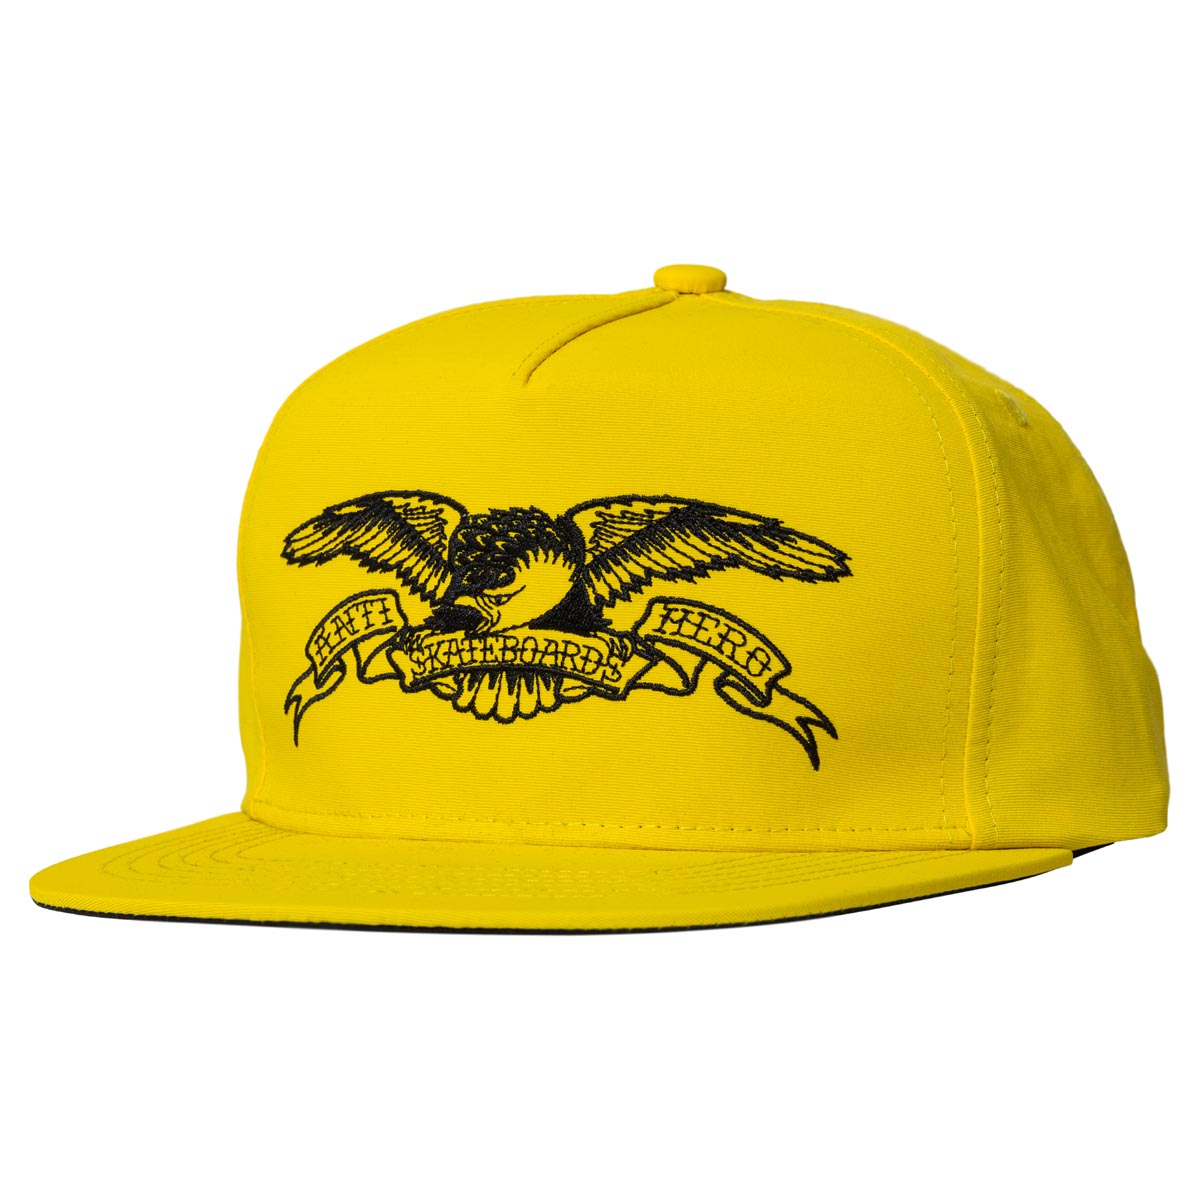 Anti-Hero Basic Eagle Snapback Hat - Mustard/Black image 1